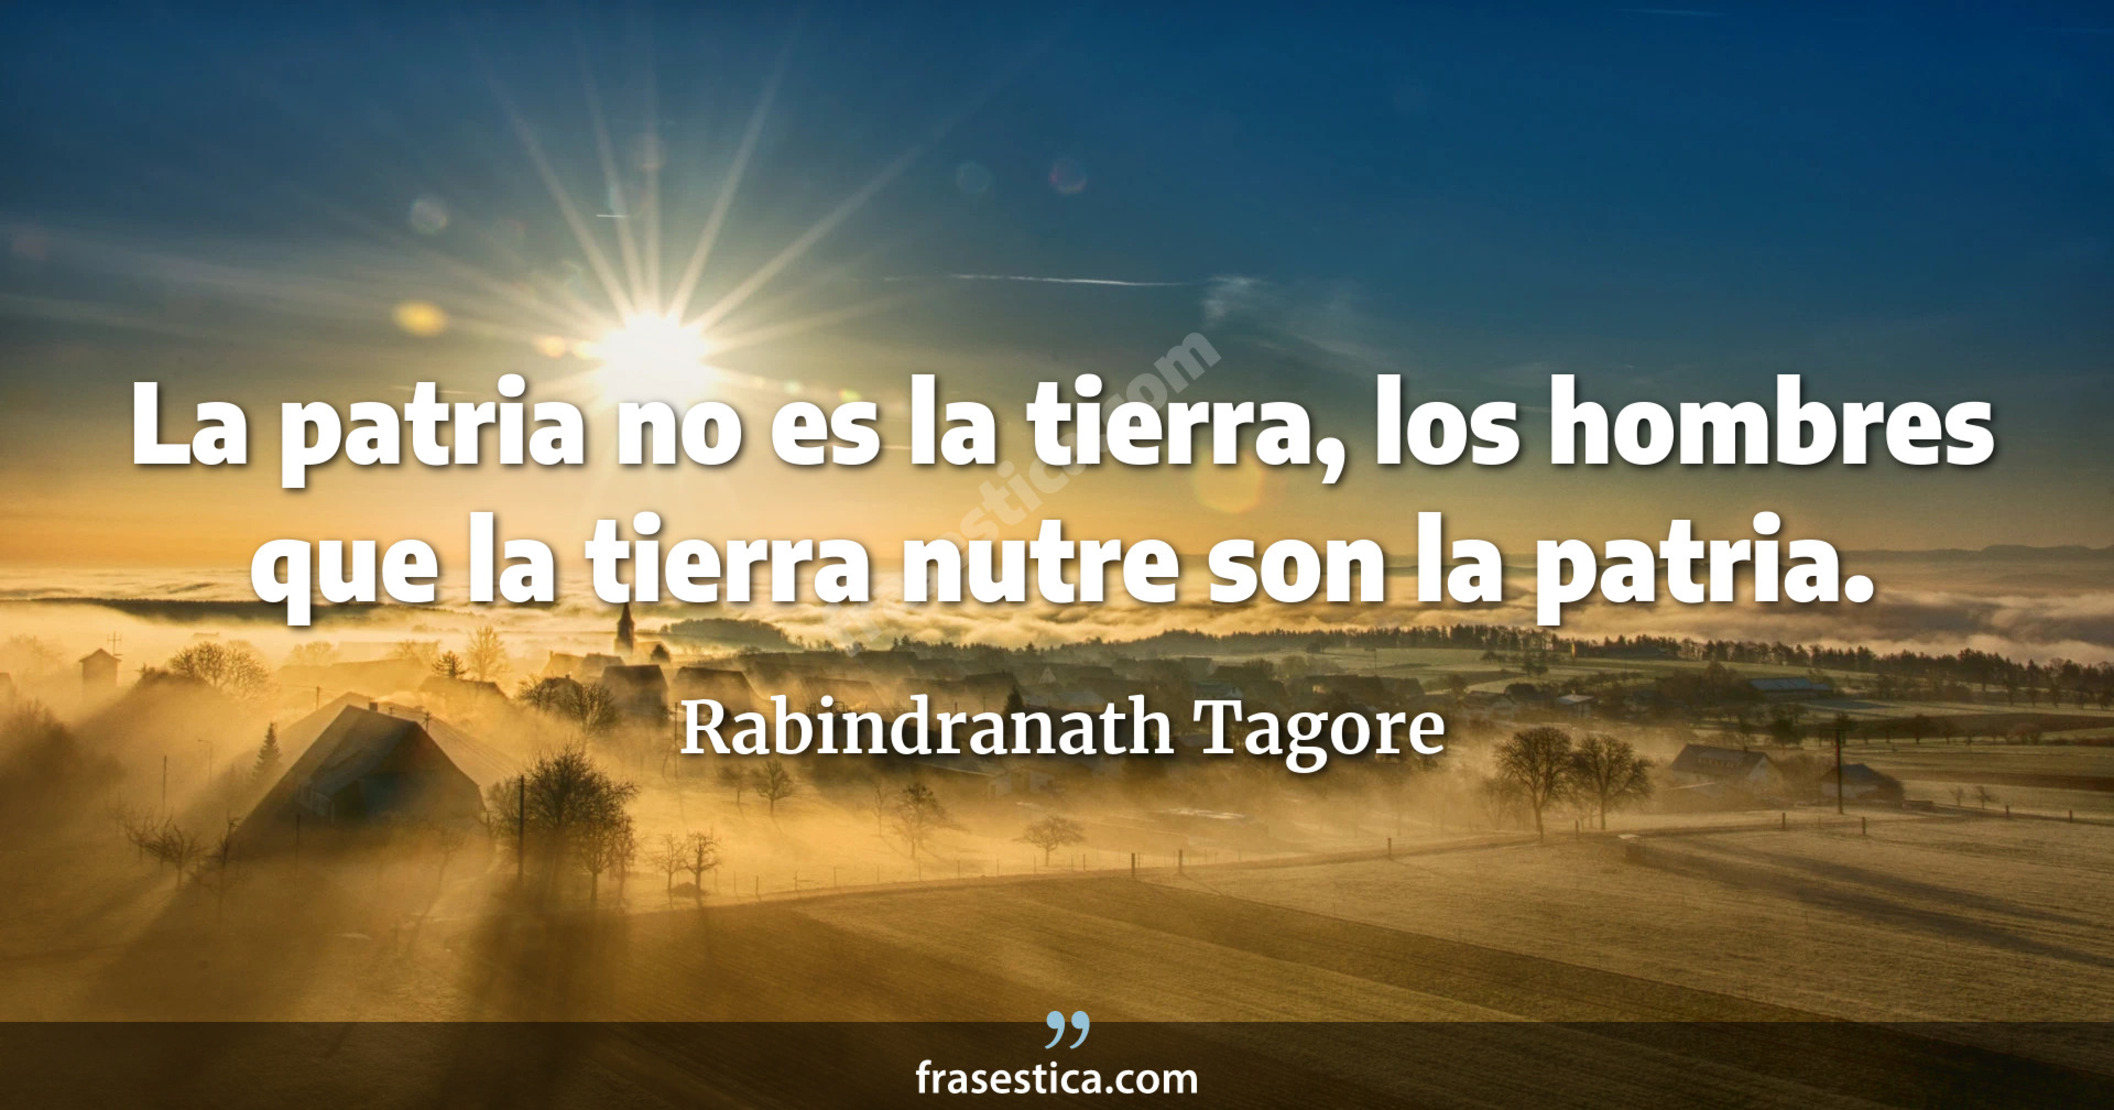 La patria no es la tierra, los hombres que la tierra nutre son la patria.  - Rabindranath Tagore